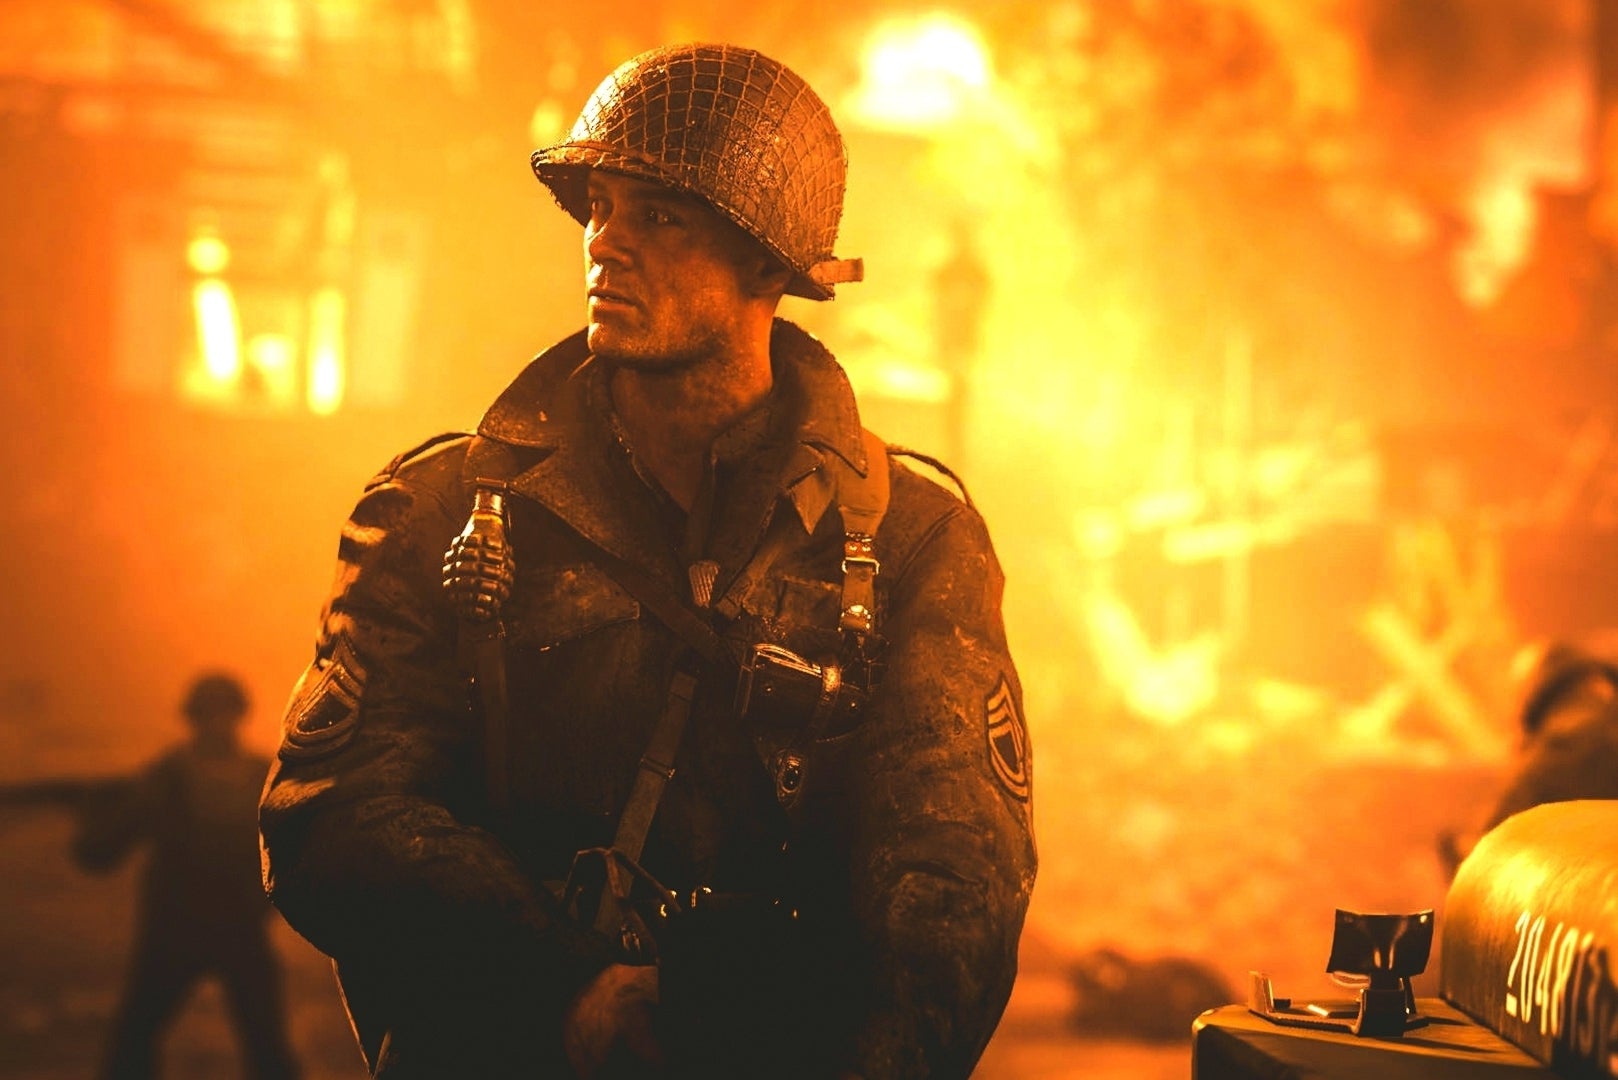 Imagen para Ventas USA: Call of Duty es la franquicia más vendida del año por novena vez consecutiva